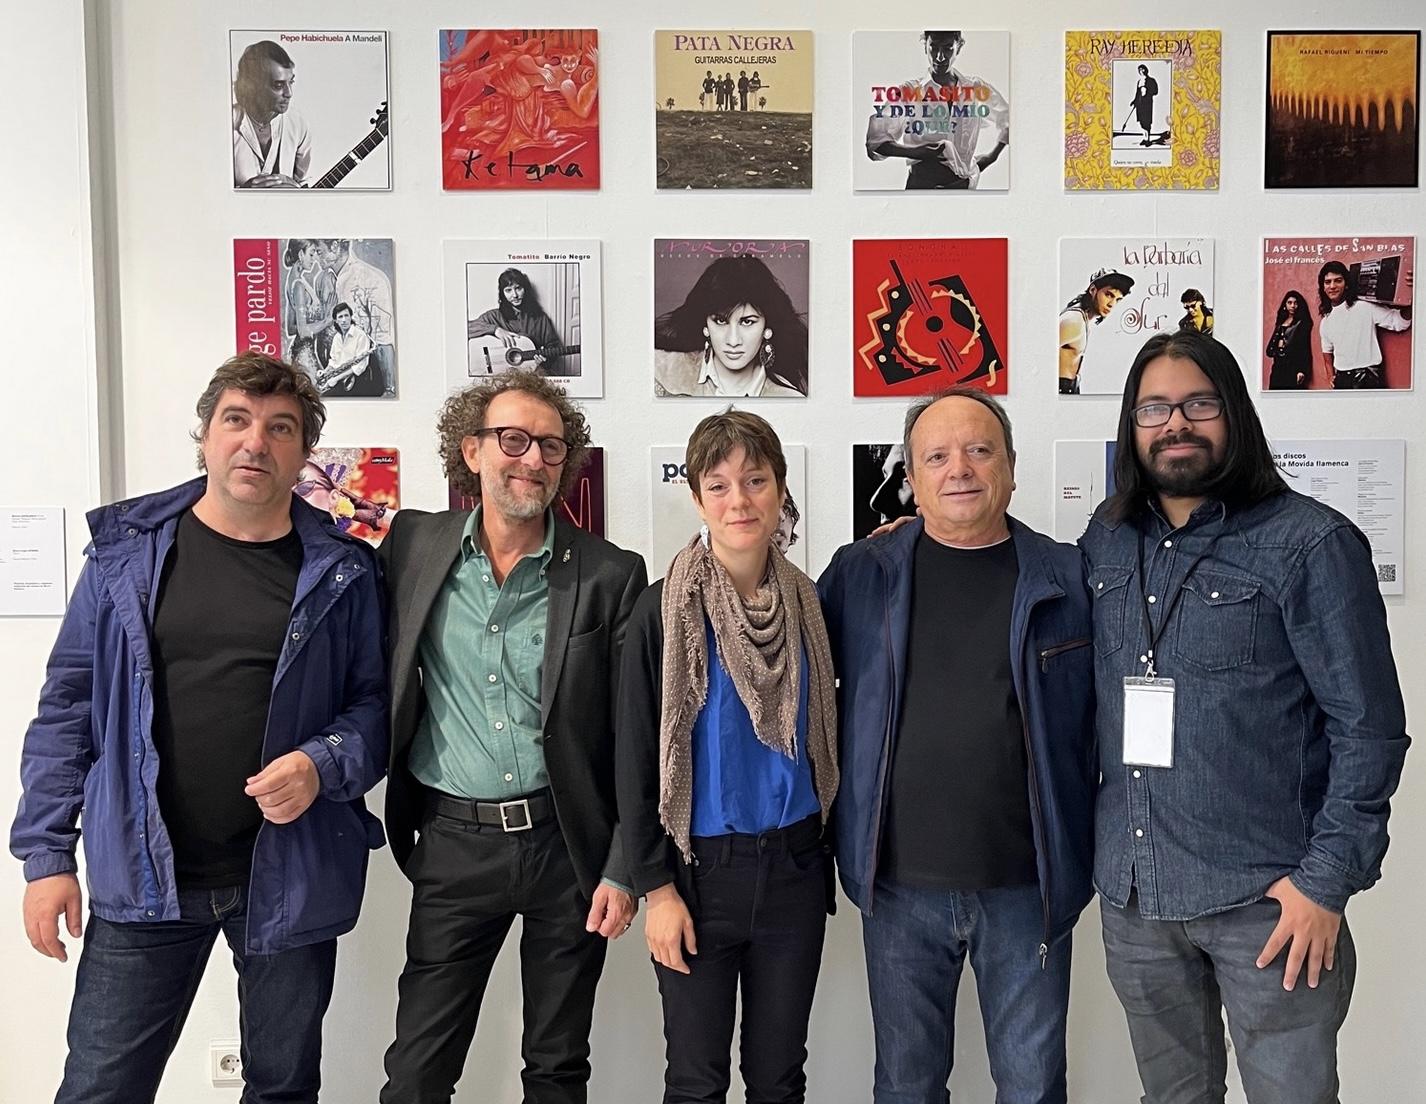 La exposición 'La movida flamenca' recuerda la nueva ola del arte jondo a través de la figura del productor musical y fotógrafo Mario Pacheco